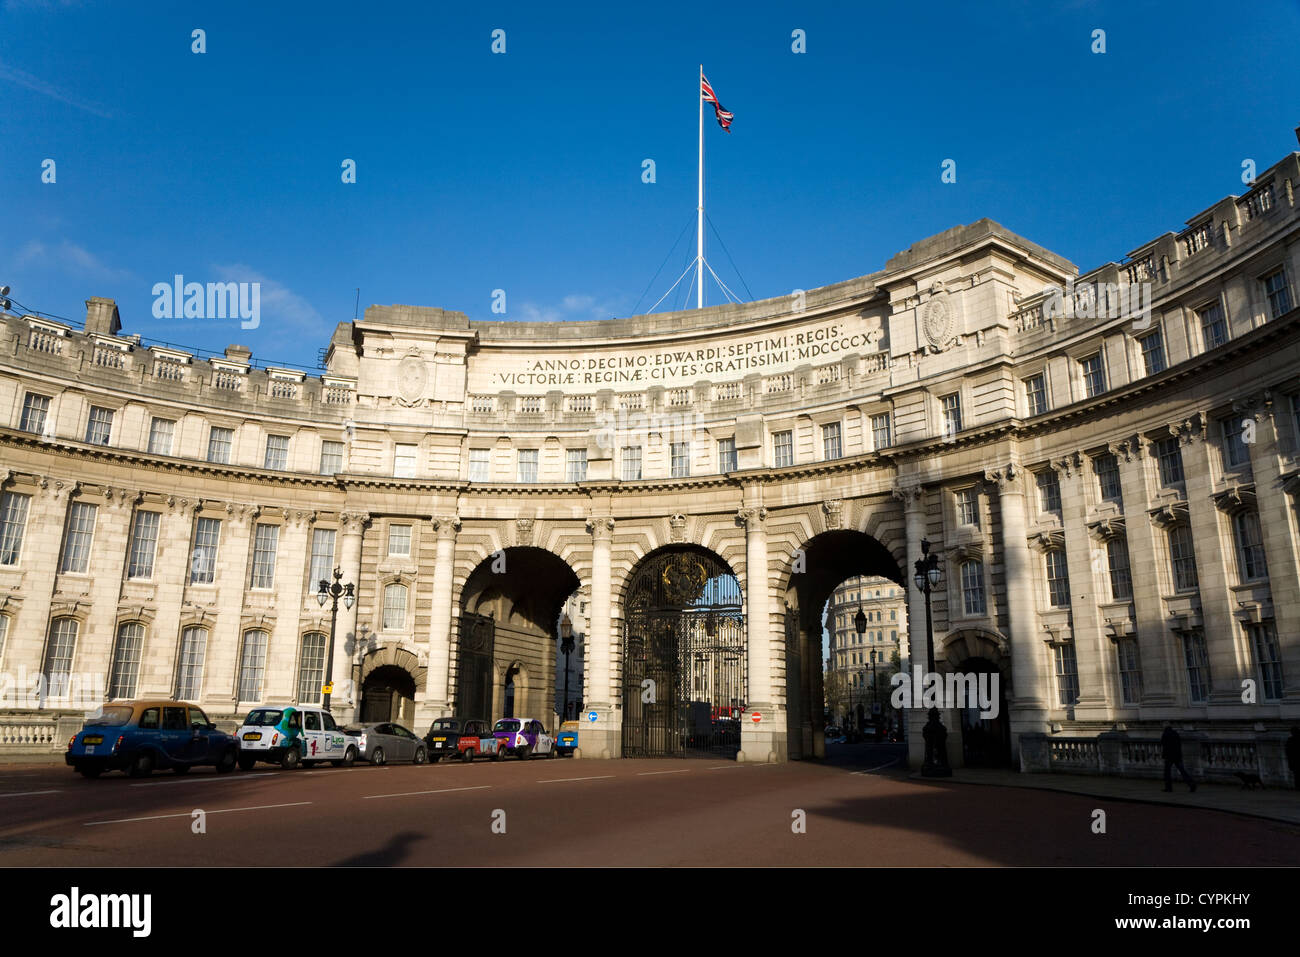 Admiralty Arch – Nord östlichen Ende der Mall & zum Gedenken an Königin Victoria – in London gebaut. Trafalgar Square ist hinter. VEREINIGTES KÖNIGREICH. Stockfoto